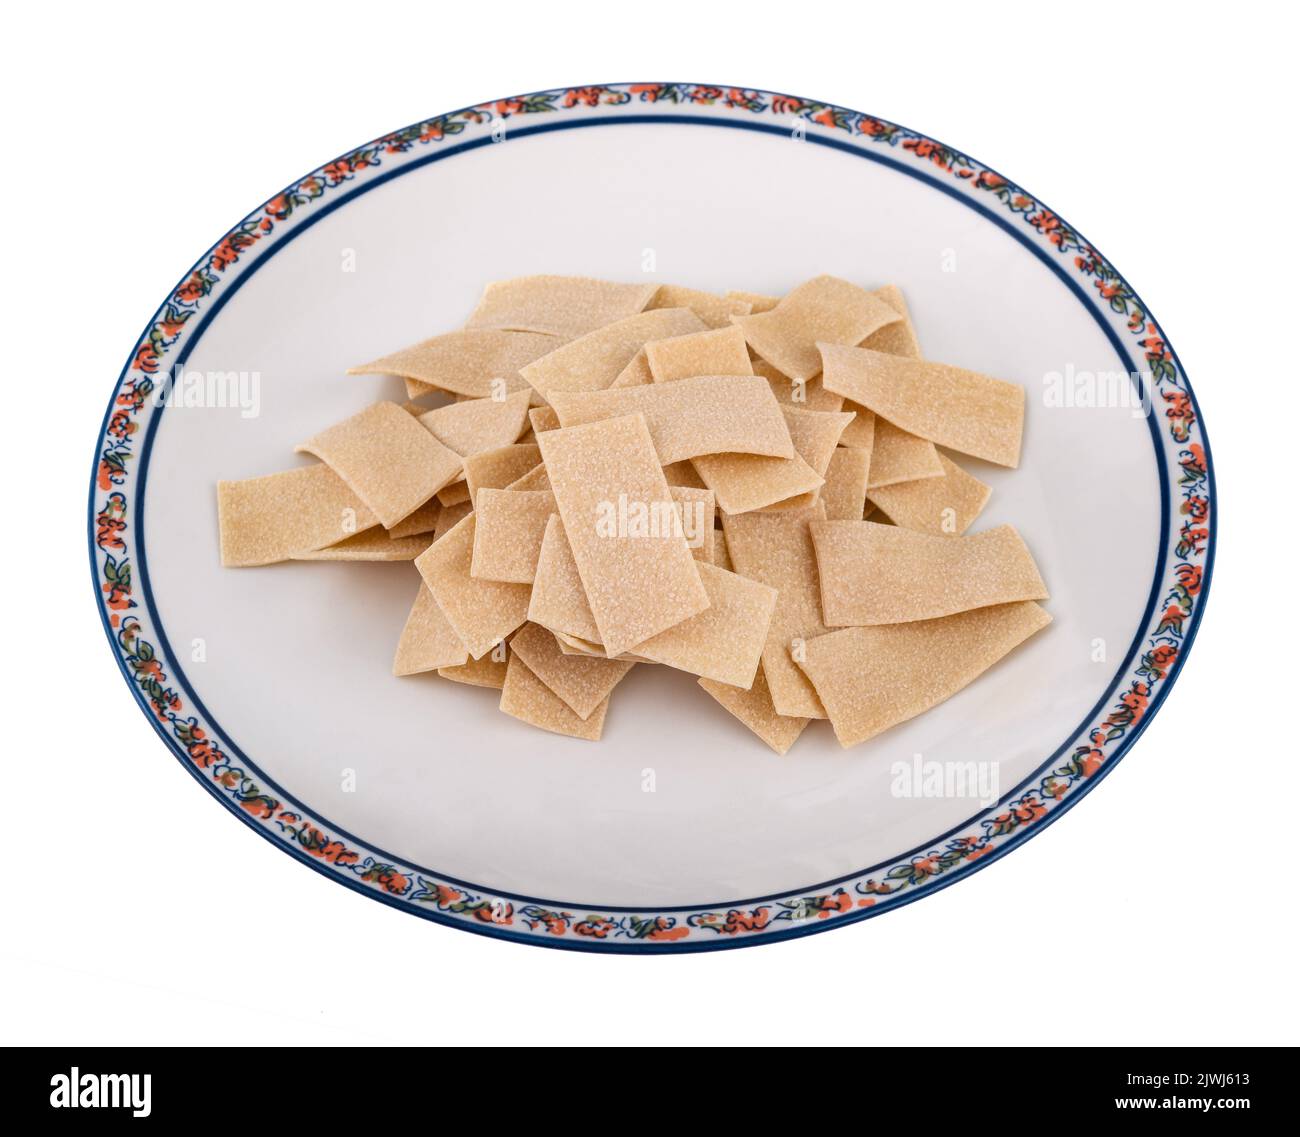 Pile de pâtes Maltagliati isolée sur fond blanc Banque D'Images